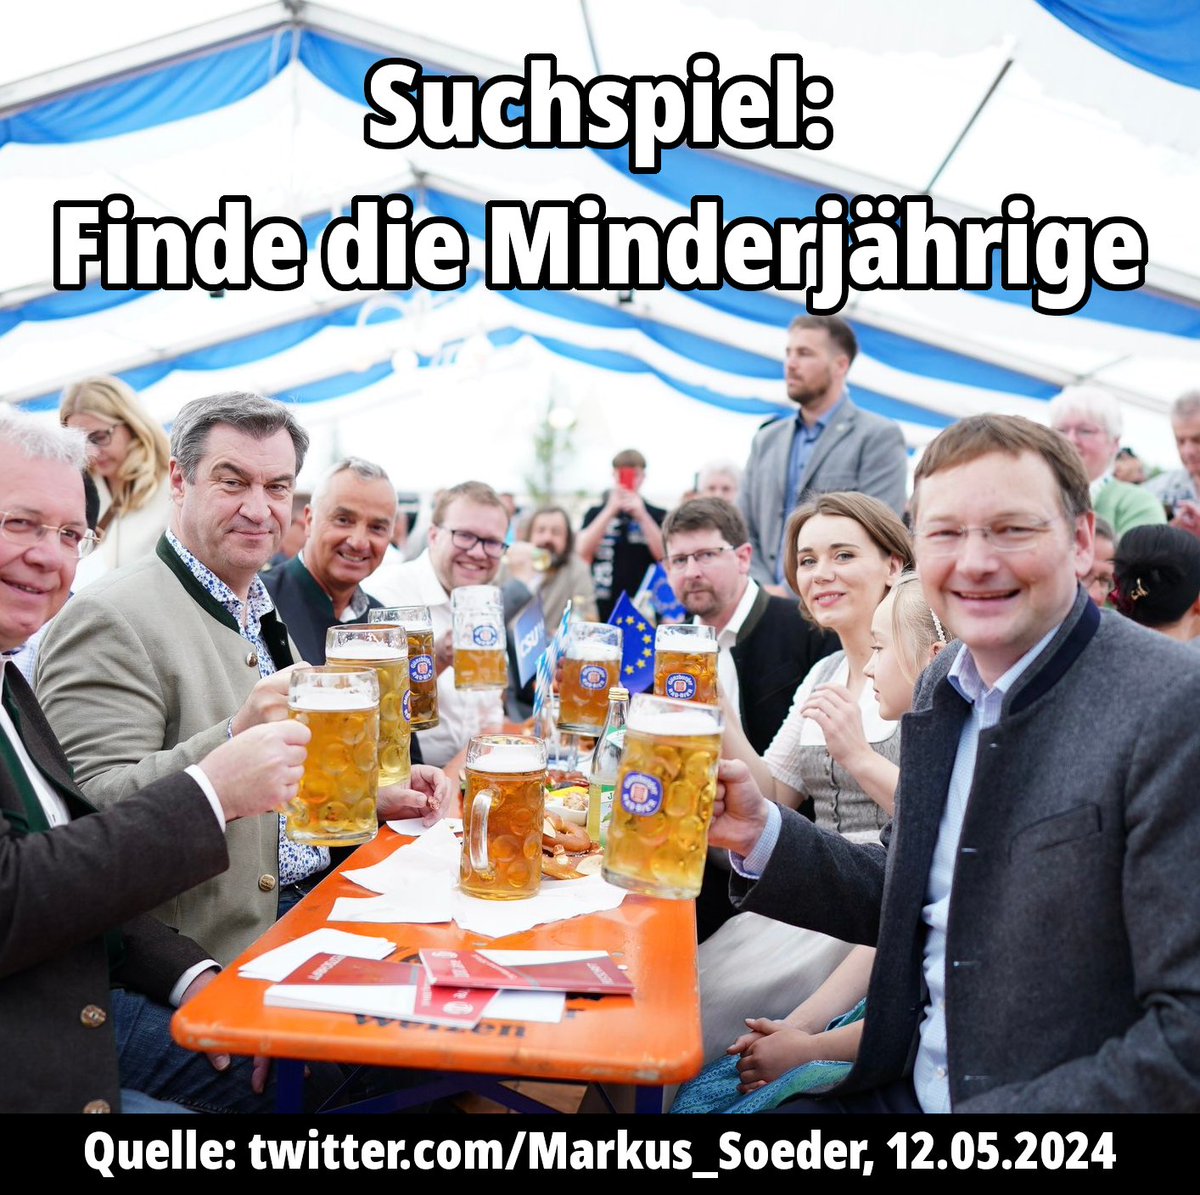 Herr #Soeder mit seiner üblichen #OansZwoaDoppelmoral 

#CSU #Alkohol #Bier #Bayern 

#Cannabis #Entkriminalisierung Teil-#Legalisierung #CanG #weedmob